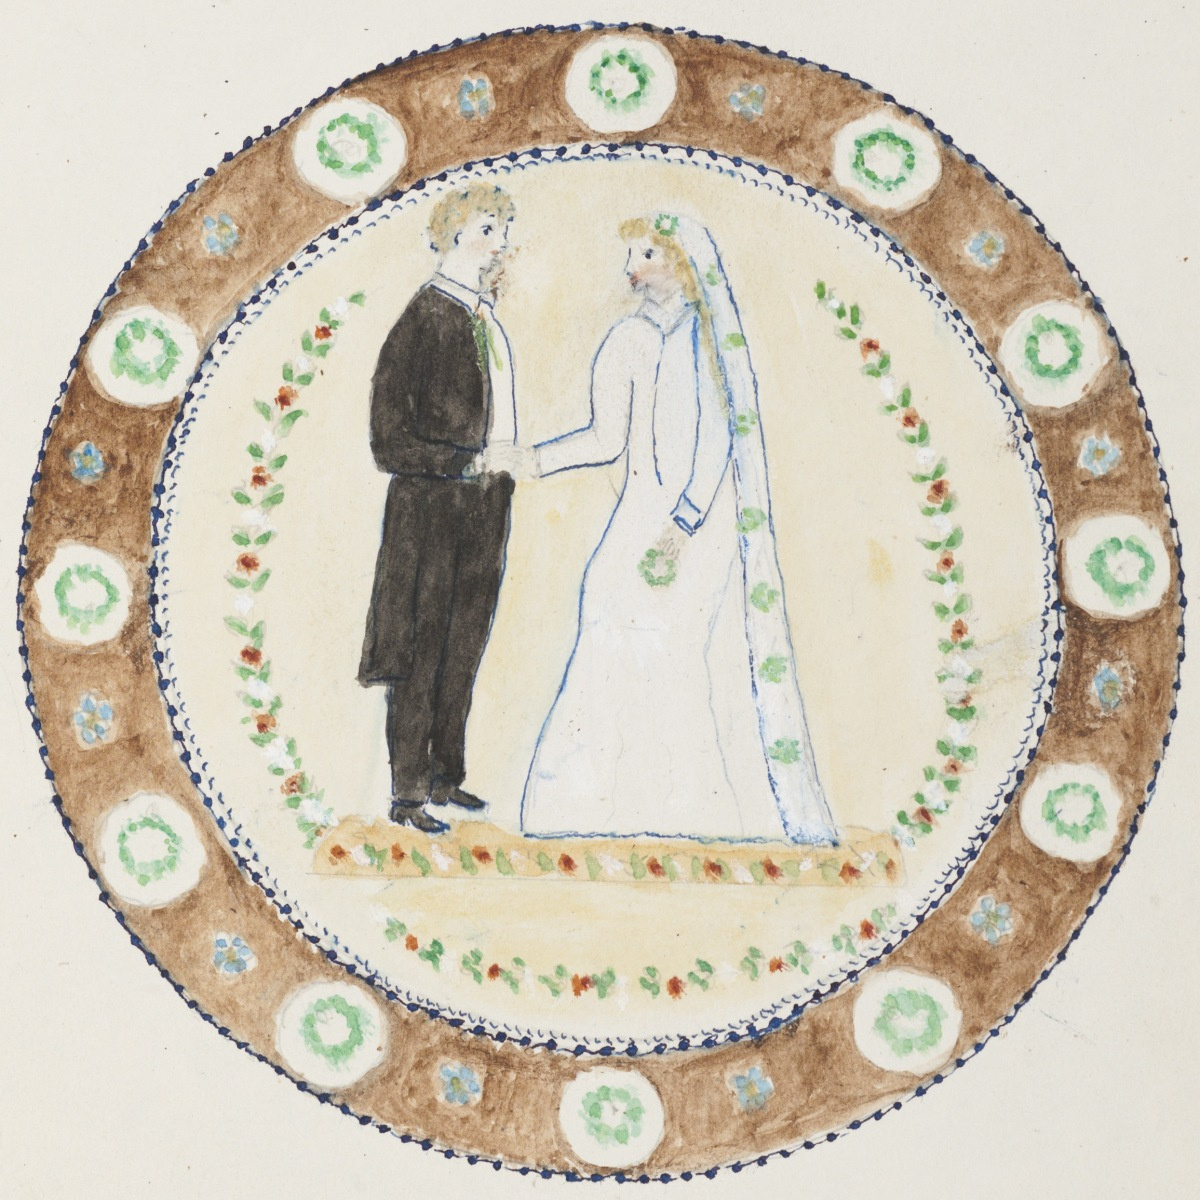 Návrh svrchní výzdoby svatebního dortu